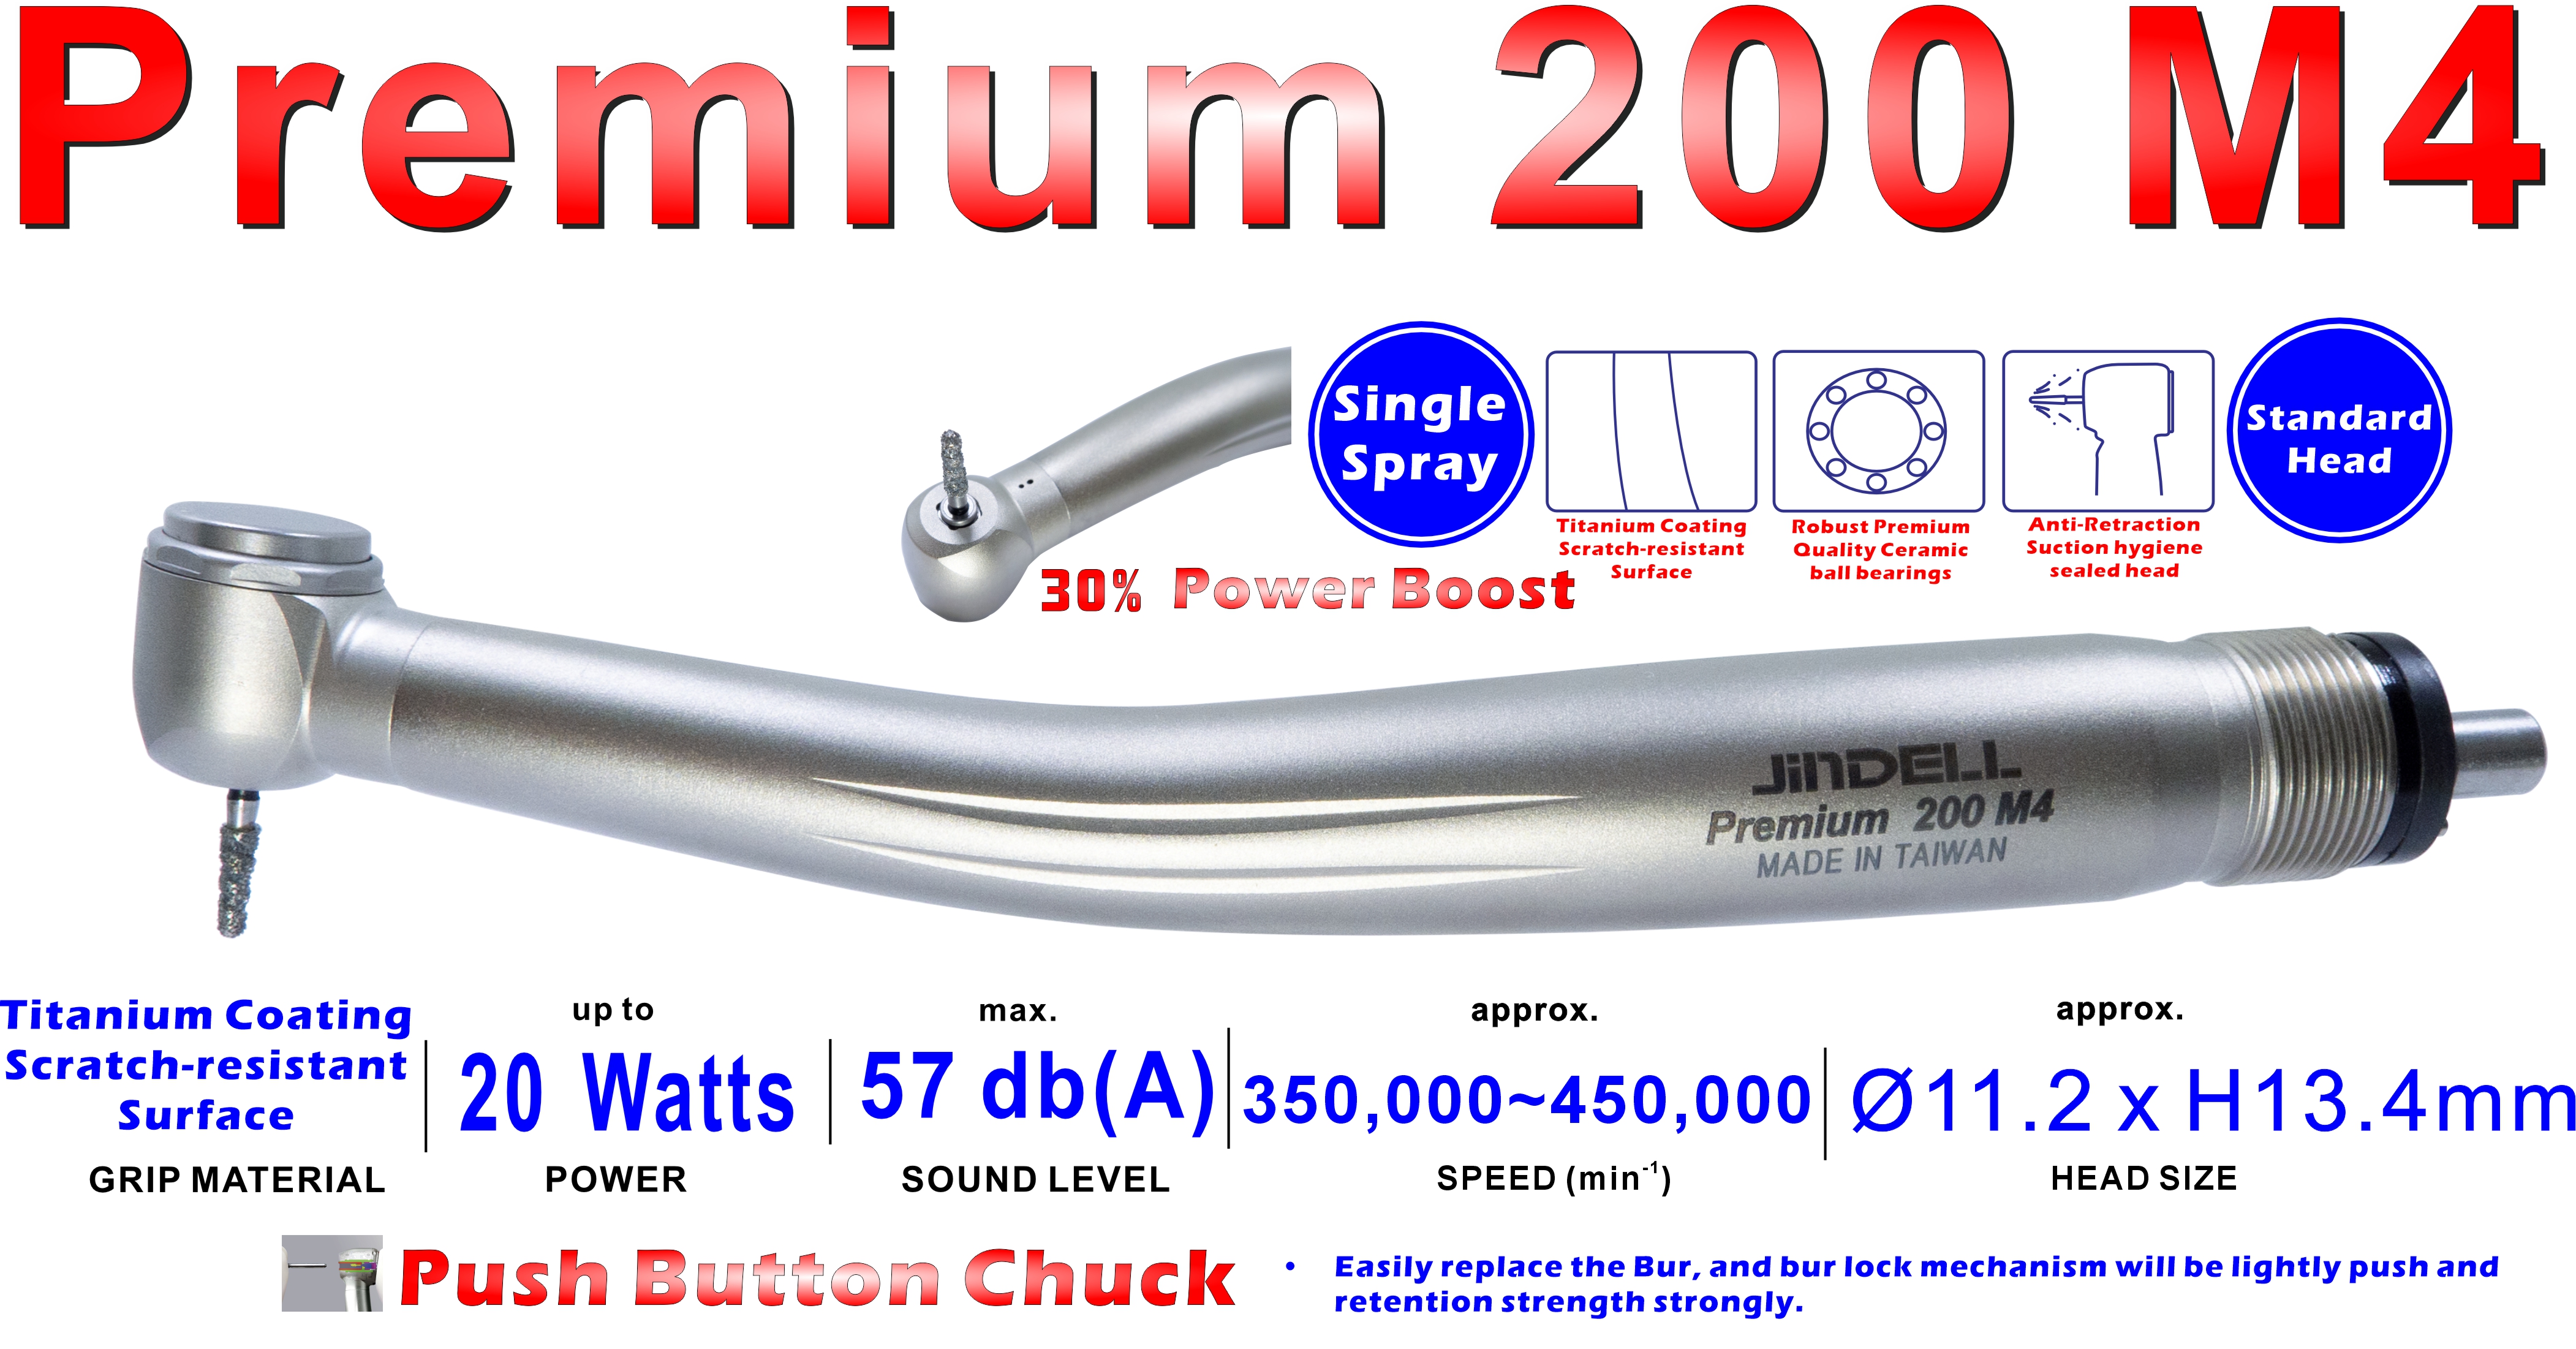 Premium 200 M4 Spec.